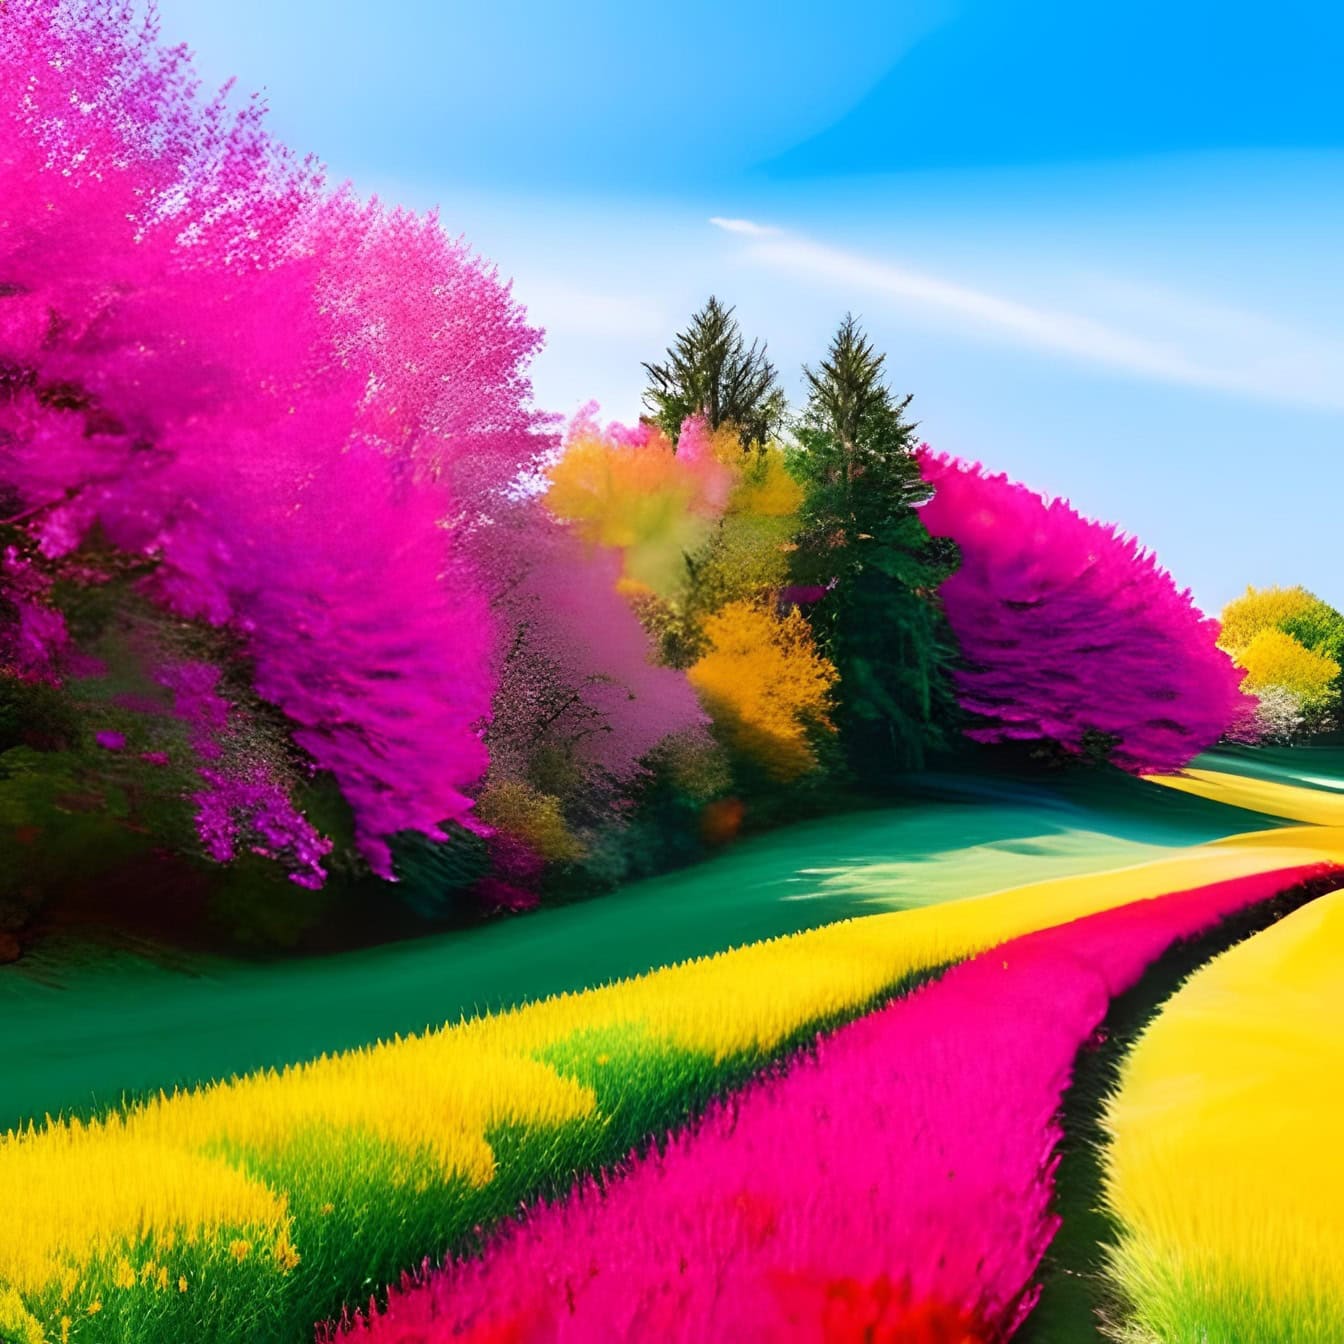 Una vivida illustrazione grafica con i toni viola-rosa di campi e alberi